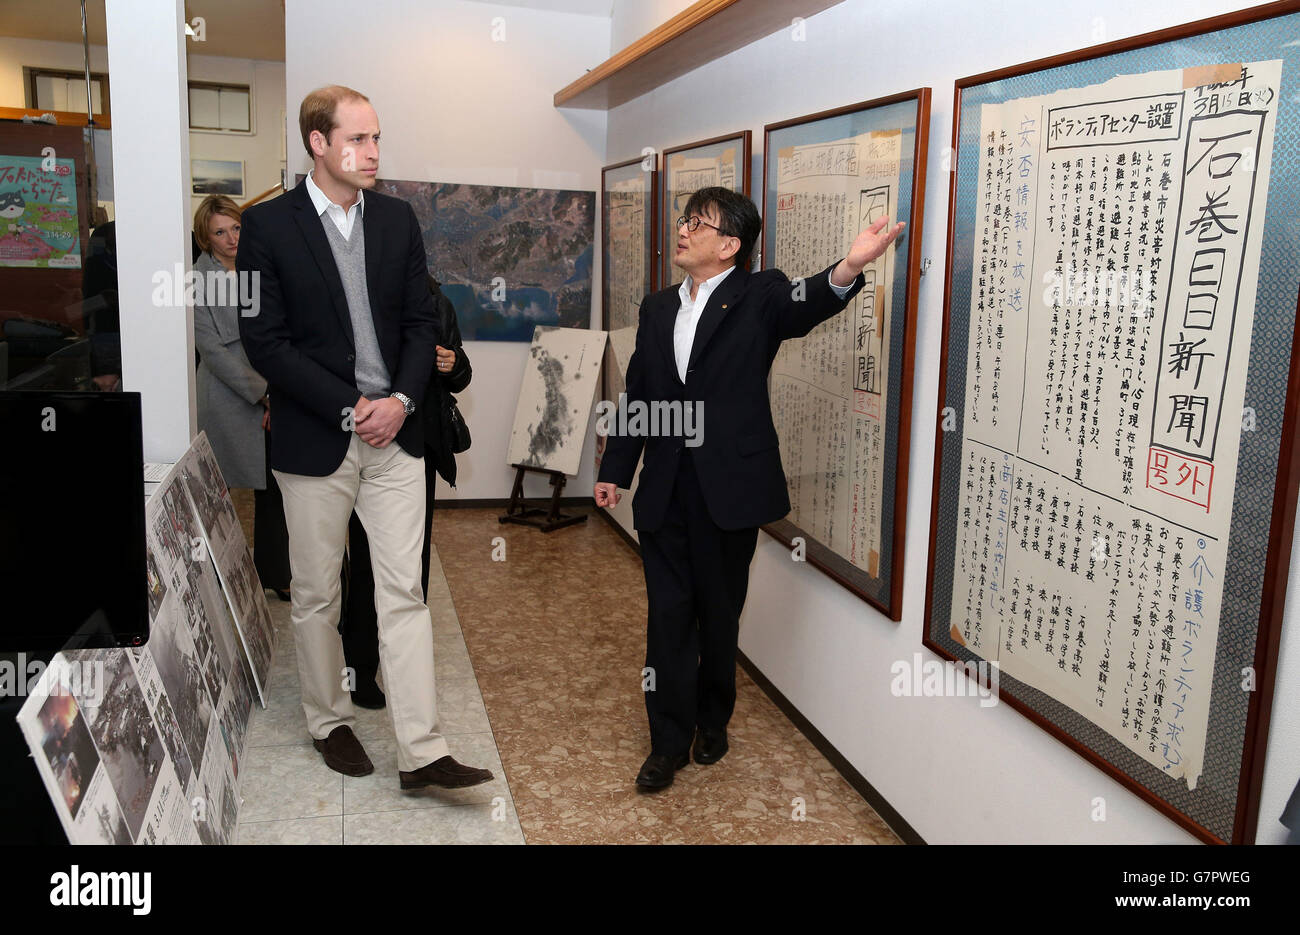 Le duc de Cambridge est présenté des pages de journaux manuscrites produites lors du tsunami de mars 2011 au bureau local de journaux Ishinomaki à Ishinomaki, au Japon. Banque D'Images